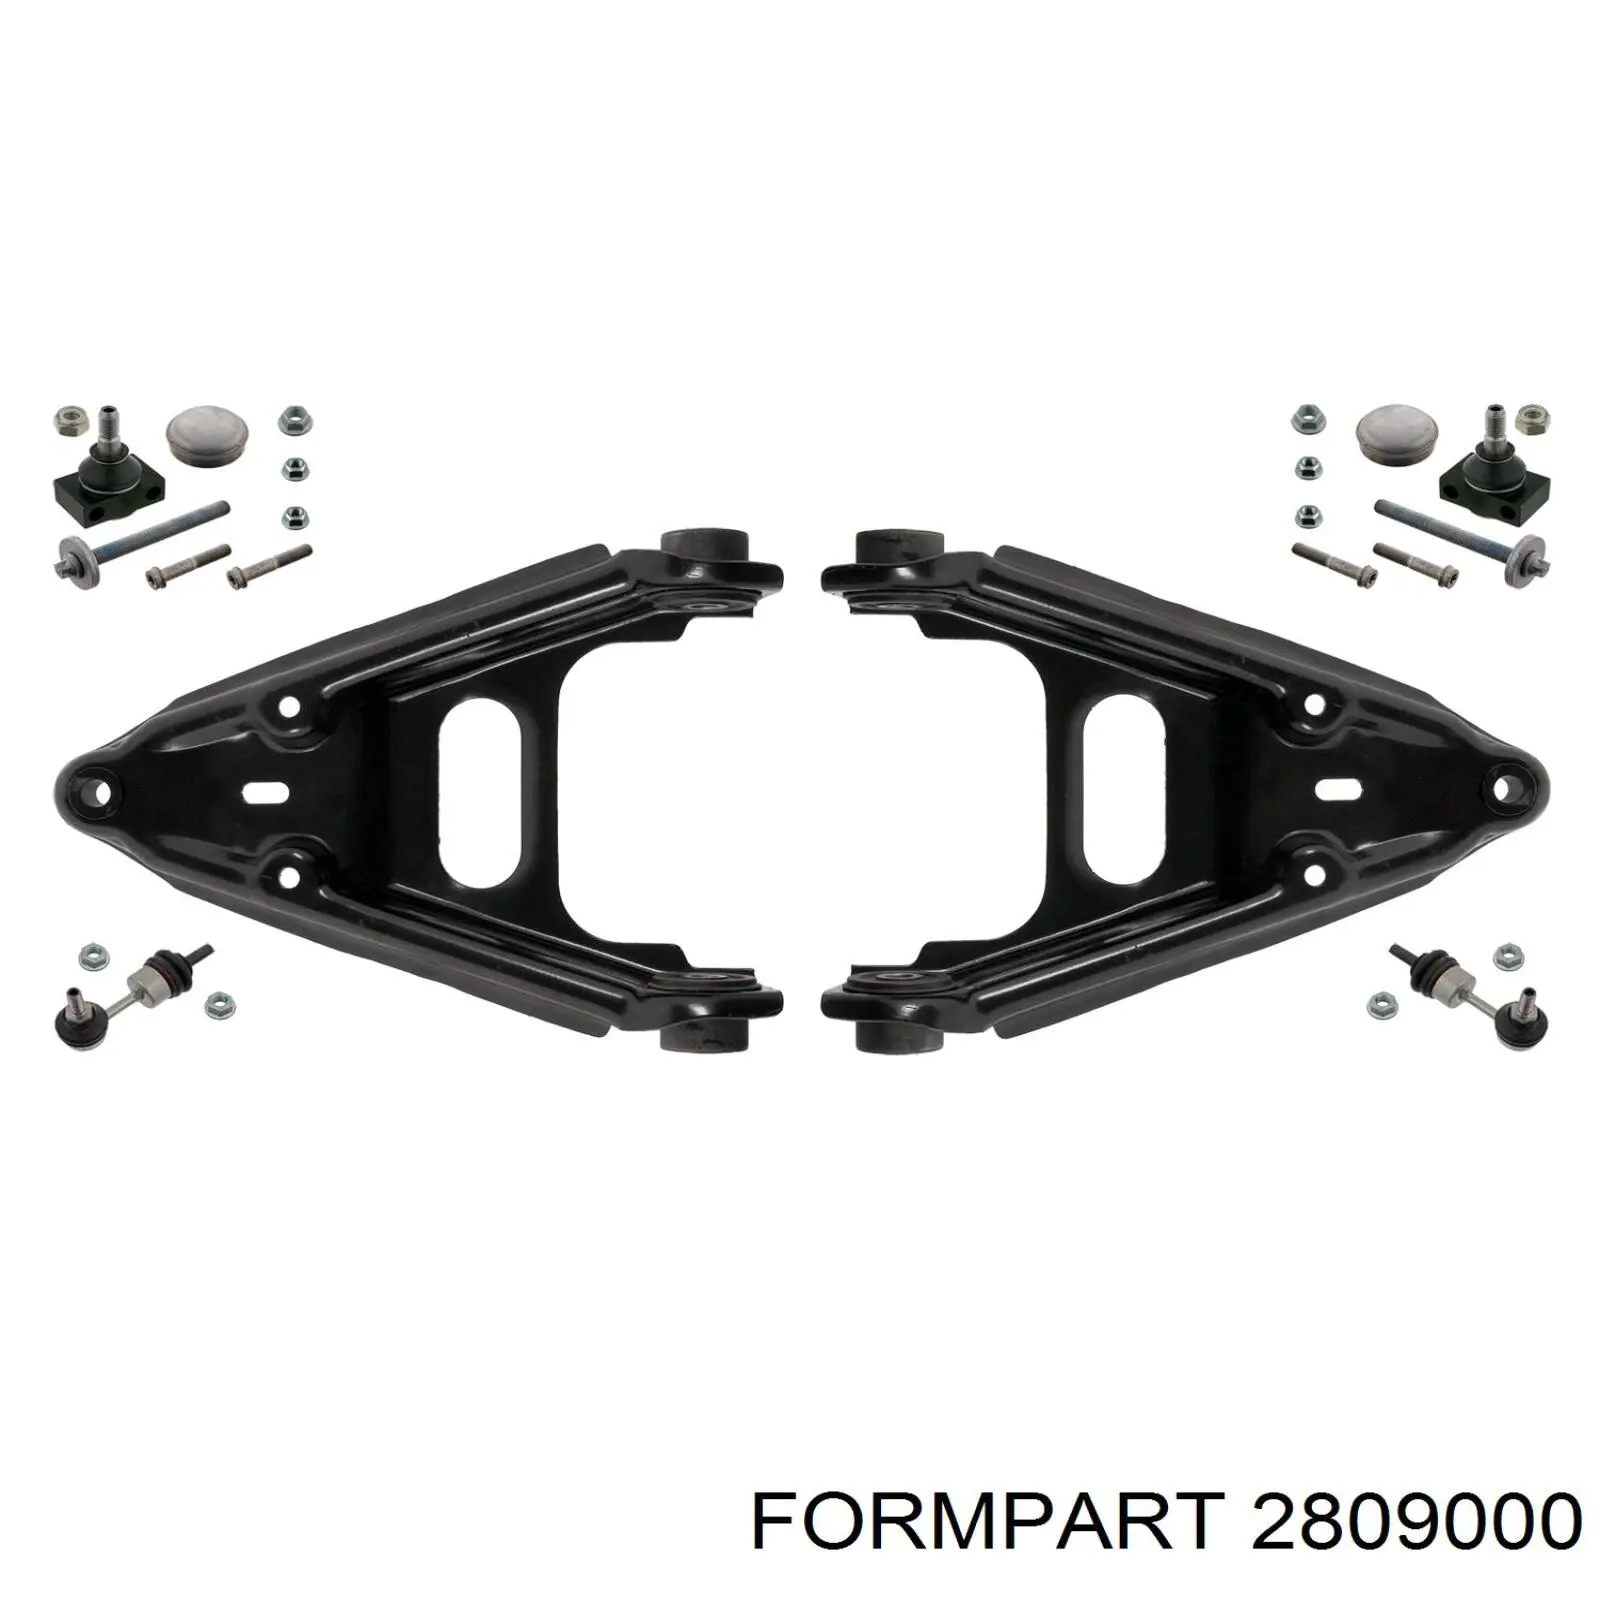 2809000 Formpart/Otoform barra oscilante, suspensión de ruedas delantera, inferior izquierda/derecha